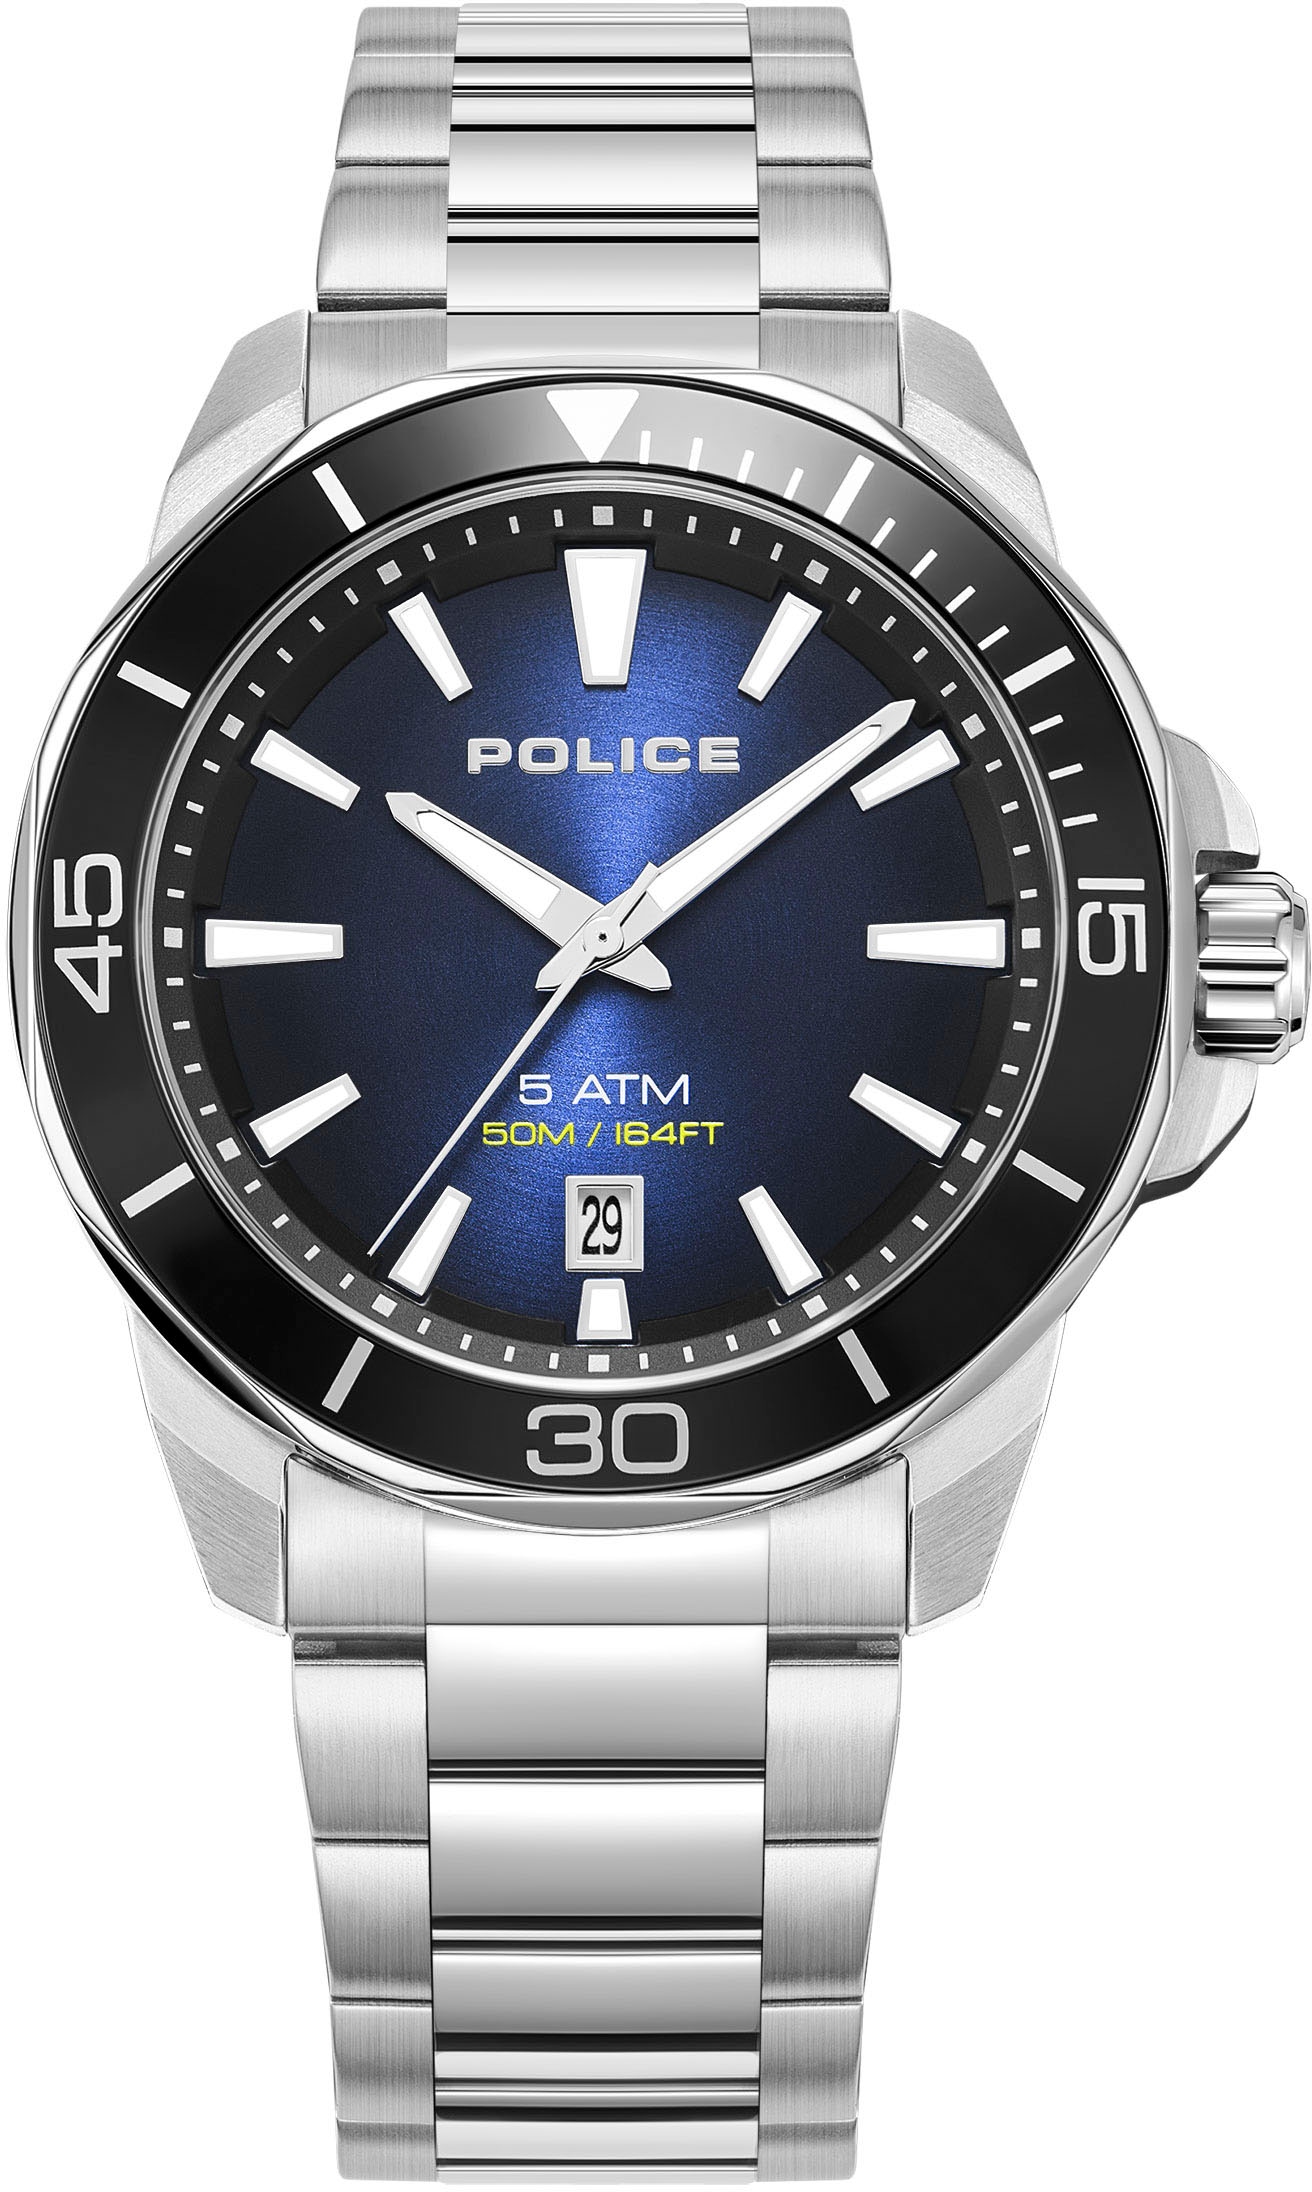 Police Uhren – machen Sie Handgelenk eine Ihrem